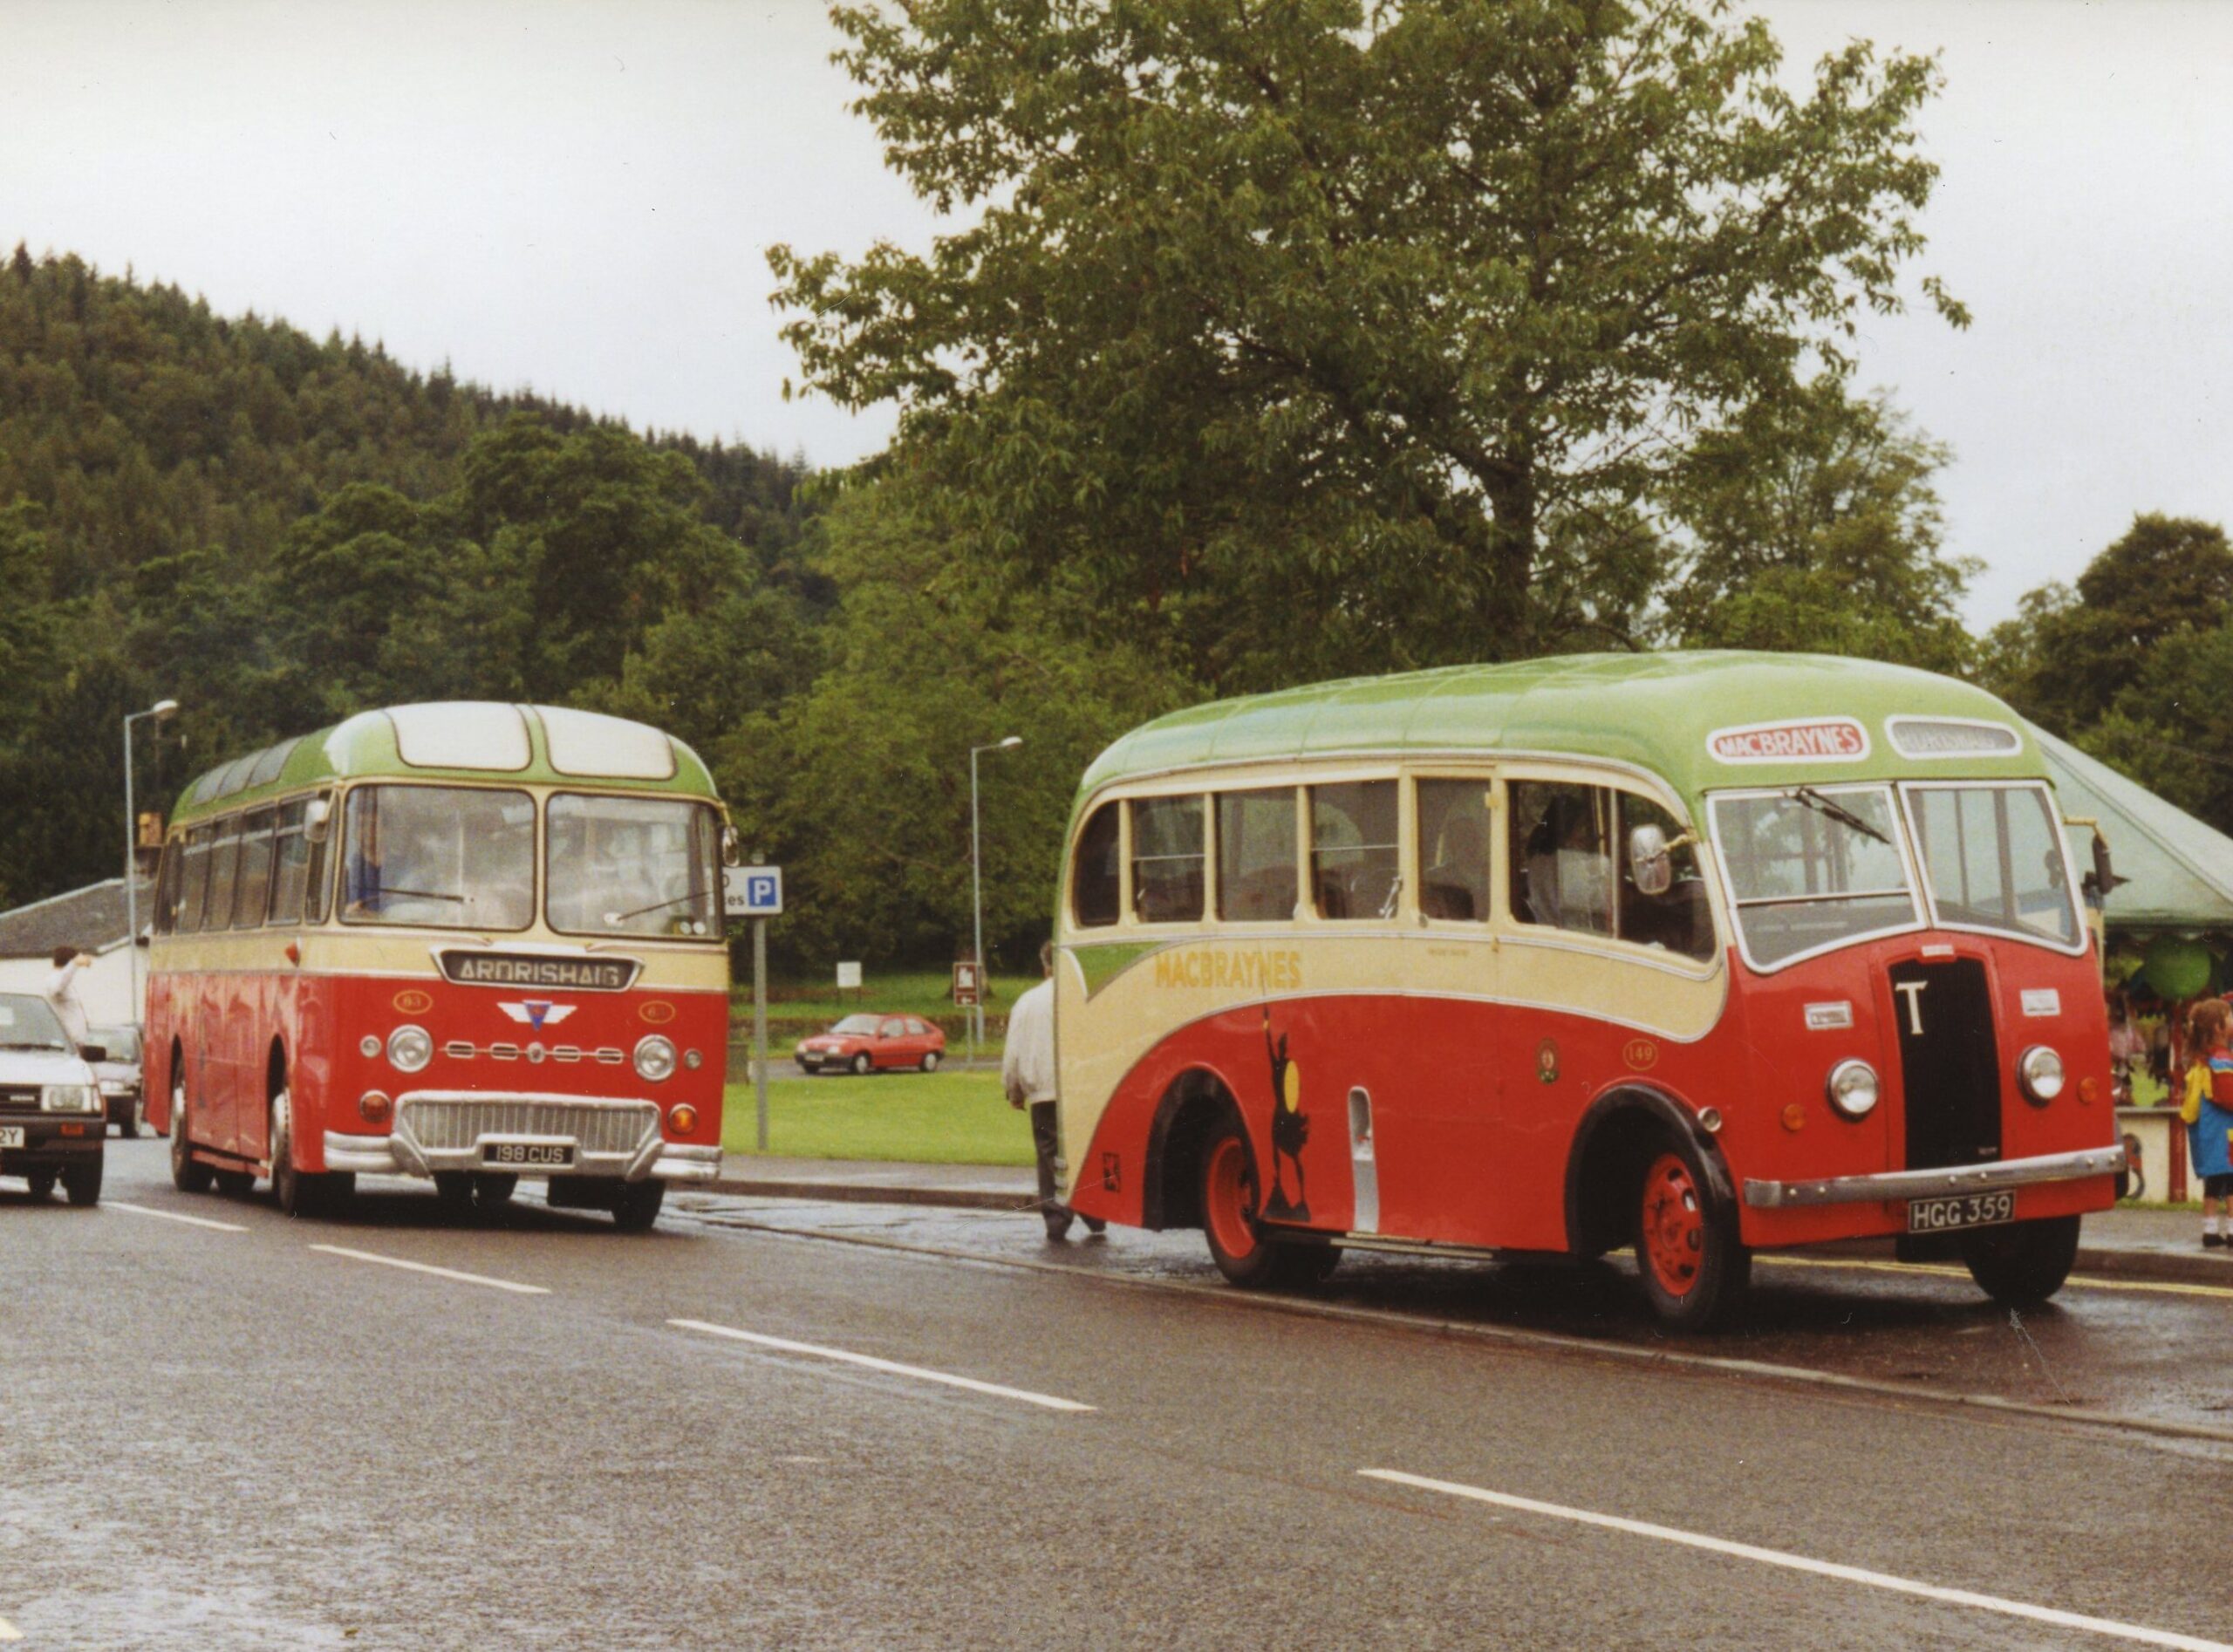 MacBraynes Buses